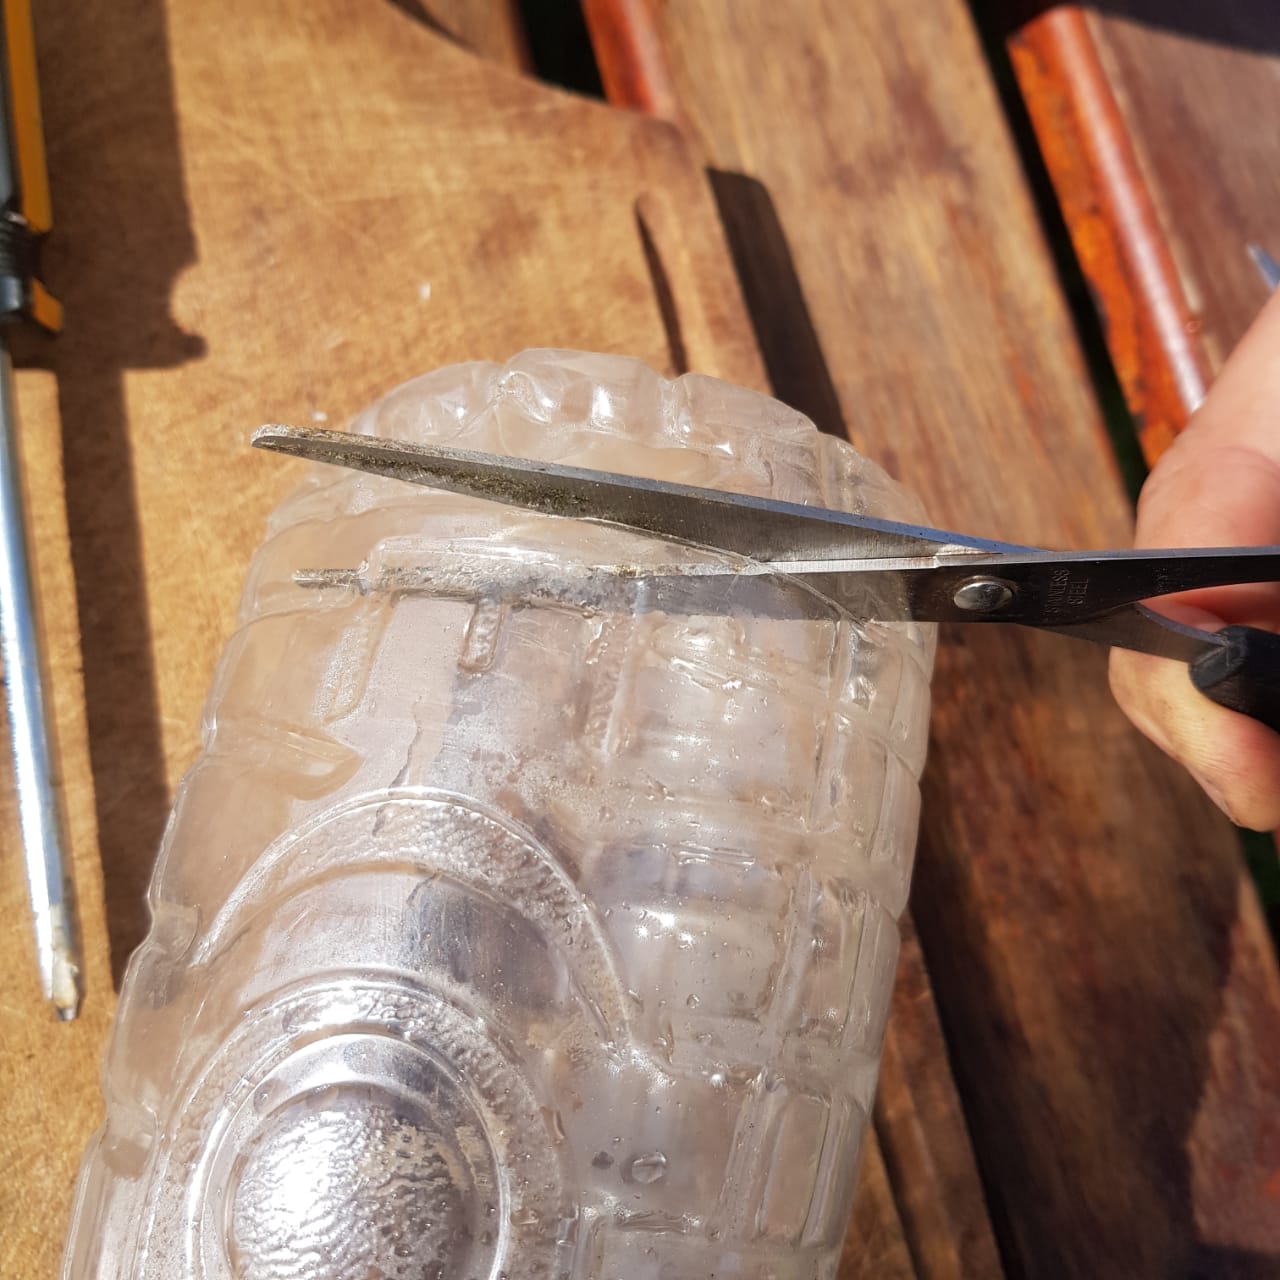 una mano utilizando una tijera para recortar la base de una botella de plástico.